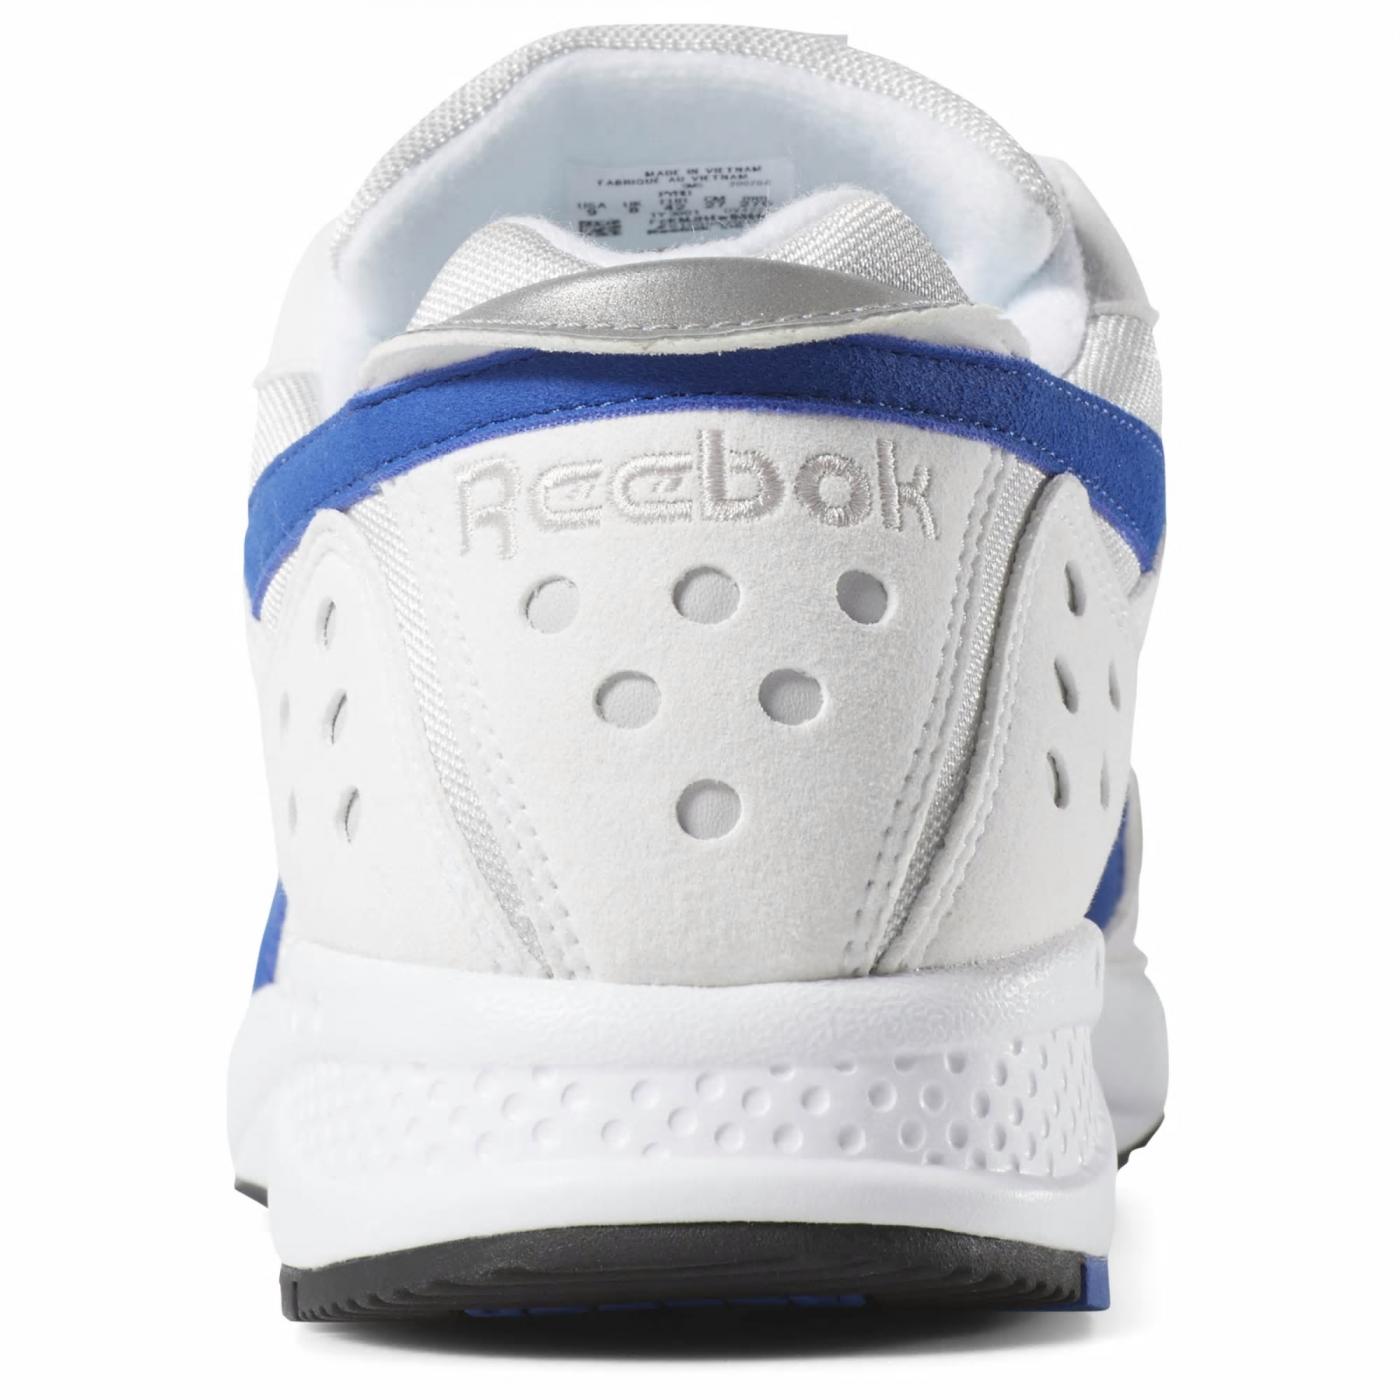 Reebok Classic Pyro calcetines cortos zapatos retro zapatillas calzado deportivo